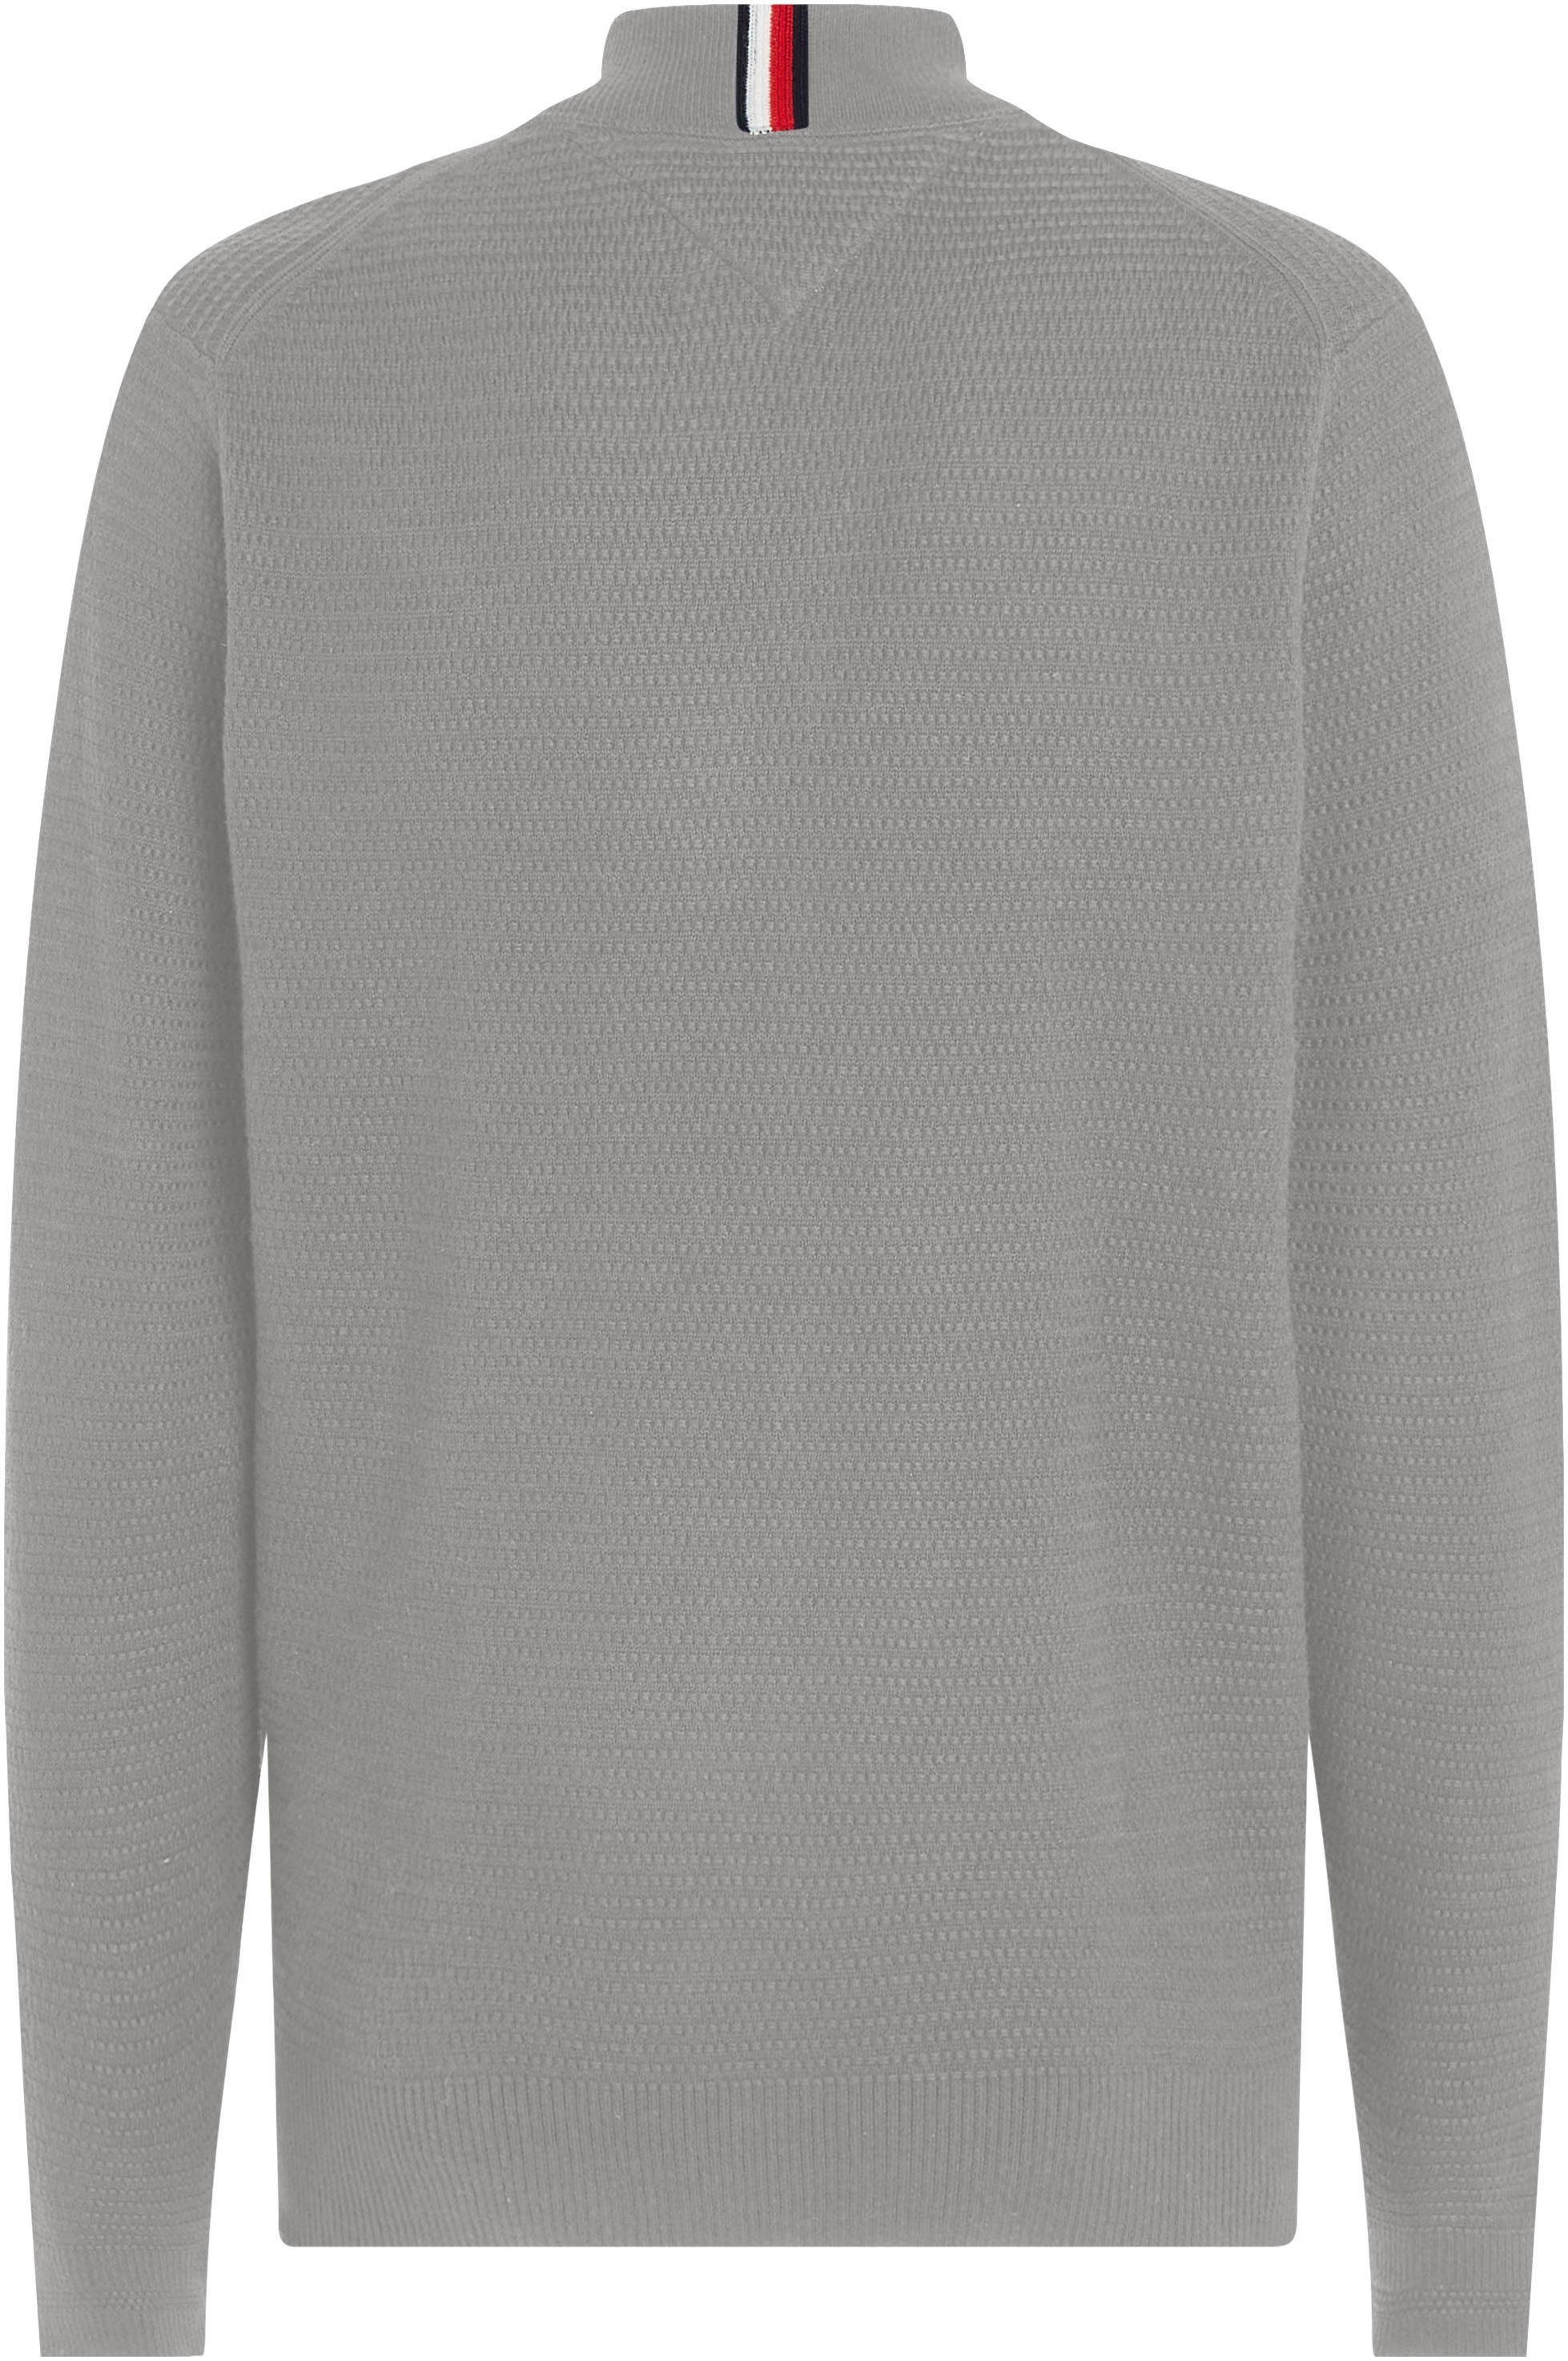 Grey BASEBALL Optik Medium ZIP Sweatshirt strukturierter THROUGH Heather Hilfiger in Tommy INTERLACED